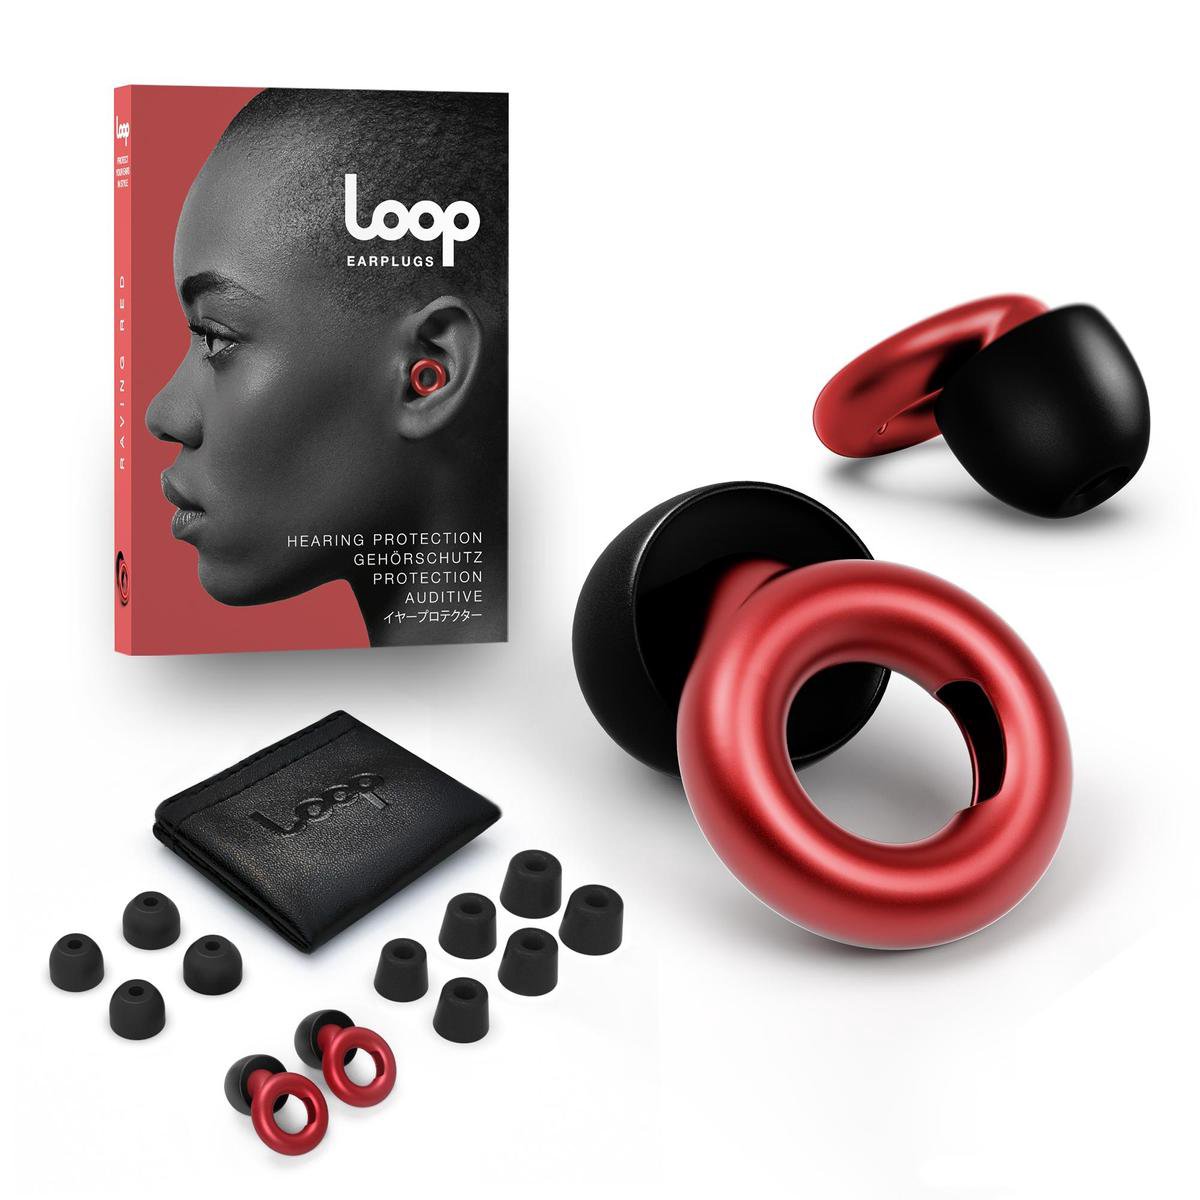 Loop oordopjes - Gehoorbescherming volwassenen - Muziek, rust, motorrijden & meer - Rood - Loop